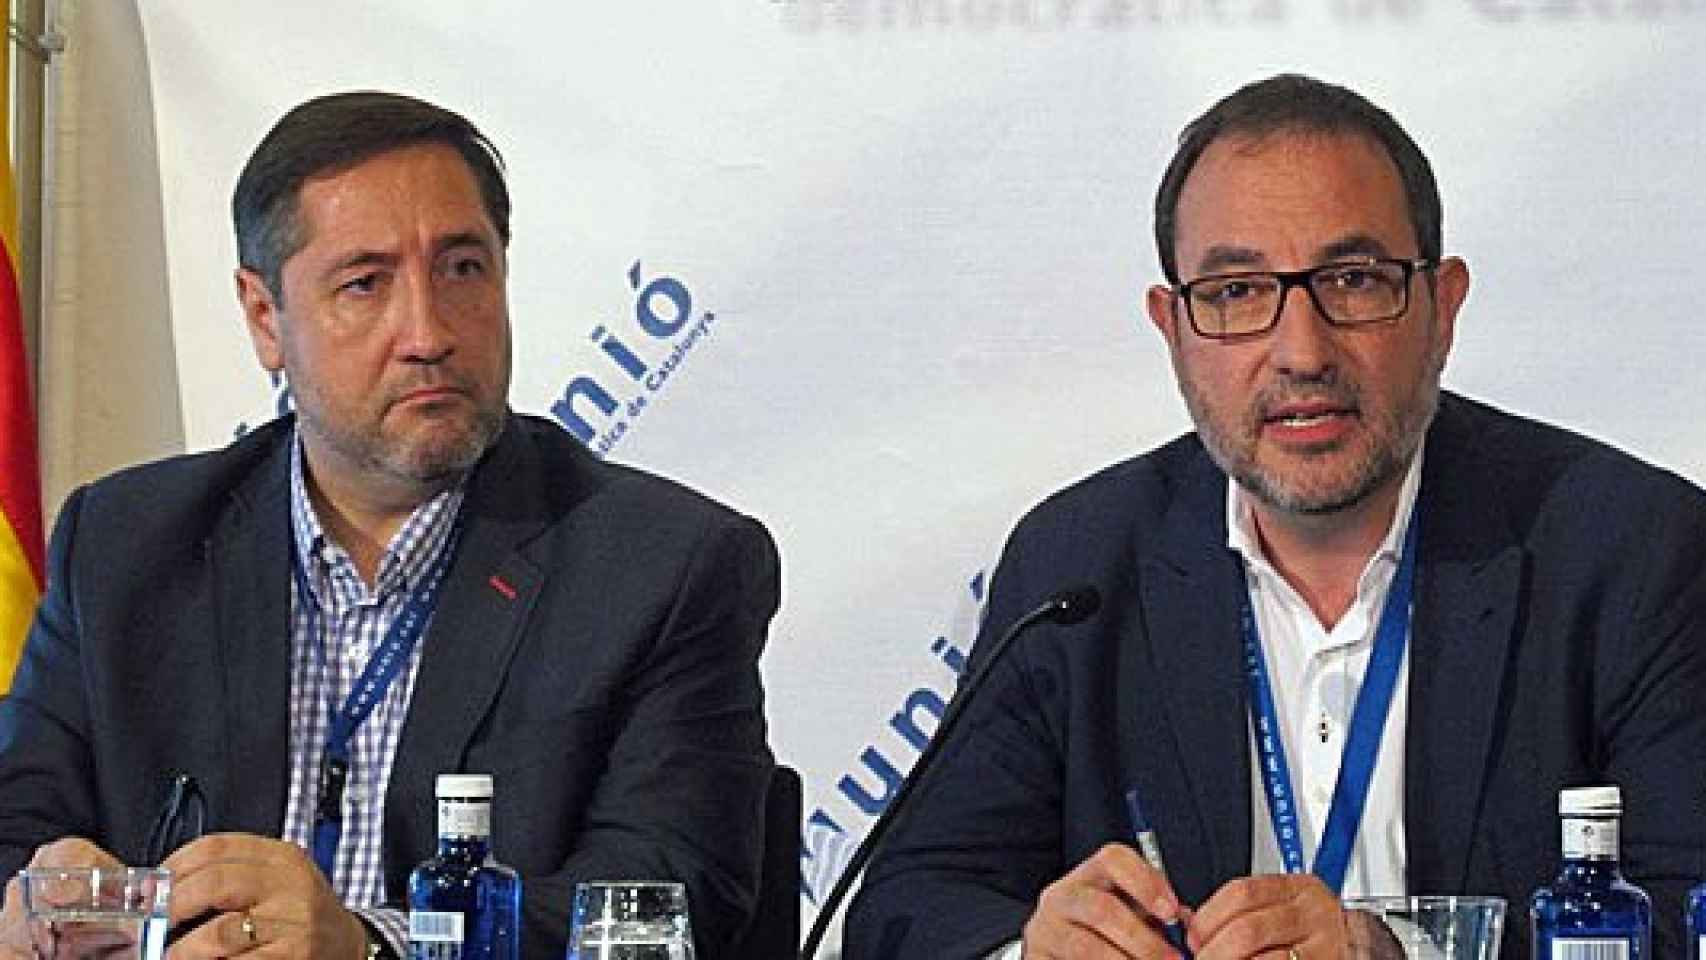 El prsidente del Consejo Nacional de UDC, Josep Maria Pelegrí, y el secretario general de UDC, Ramon Espadaler